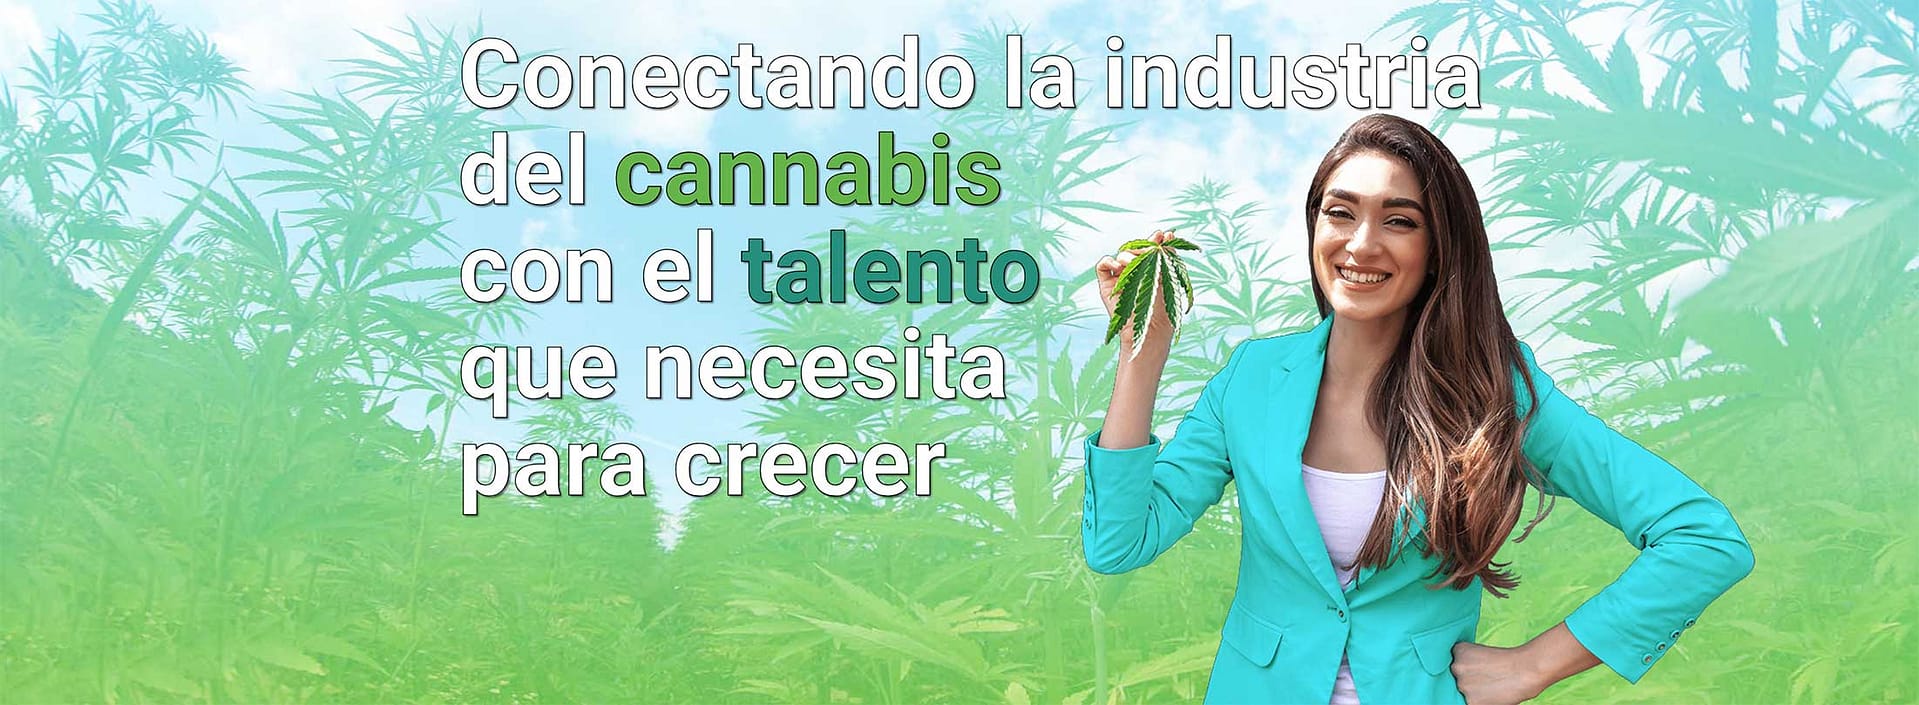 Conectando la industria del cannabis con el talento que necesita para crecer